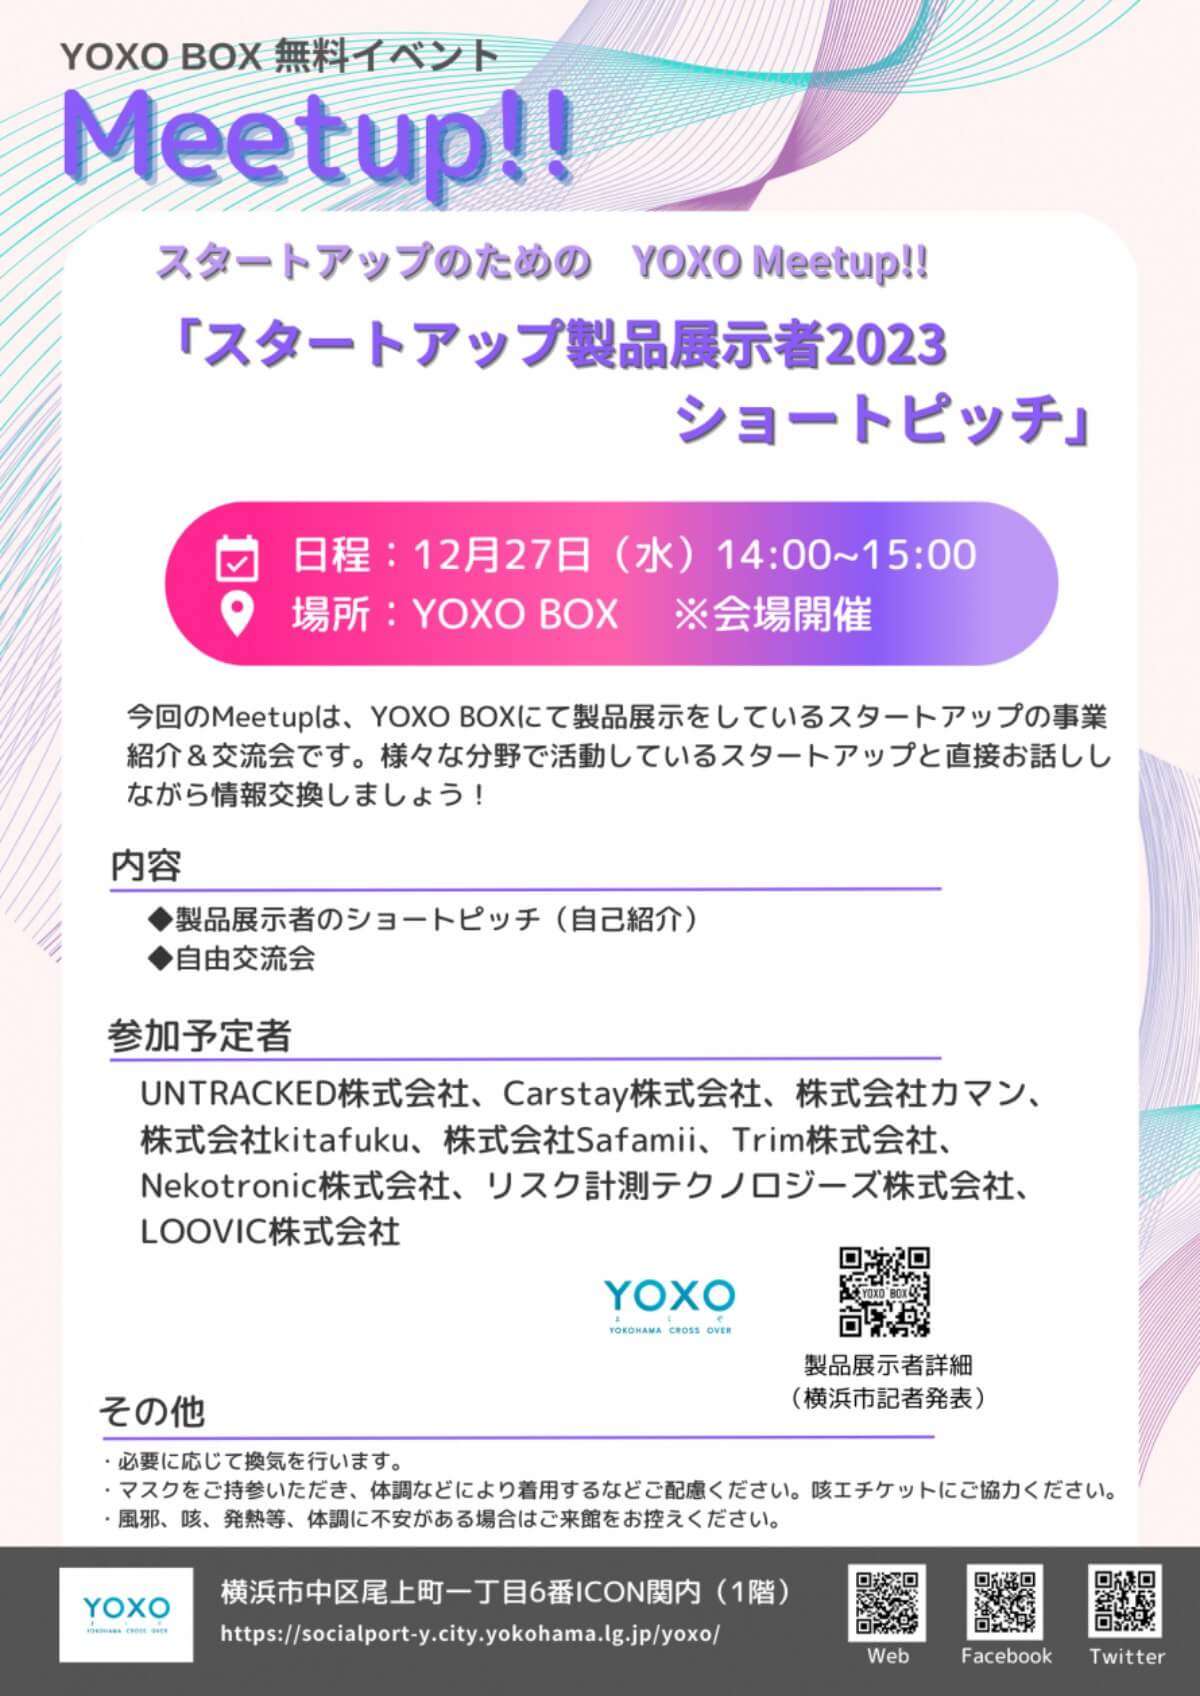 【12/27】スタートアップのための YOXO Meetup!! 「スタートアップ製品展示者2023 ショートピッチ」